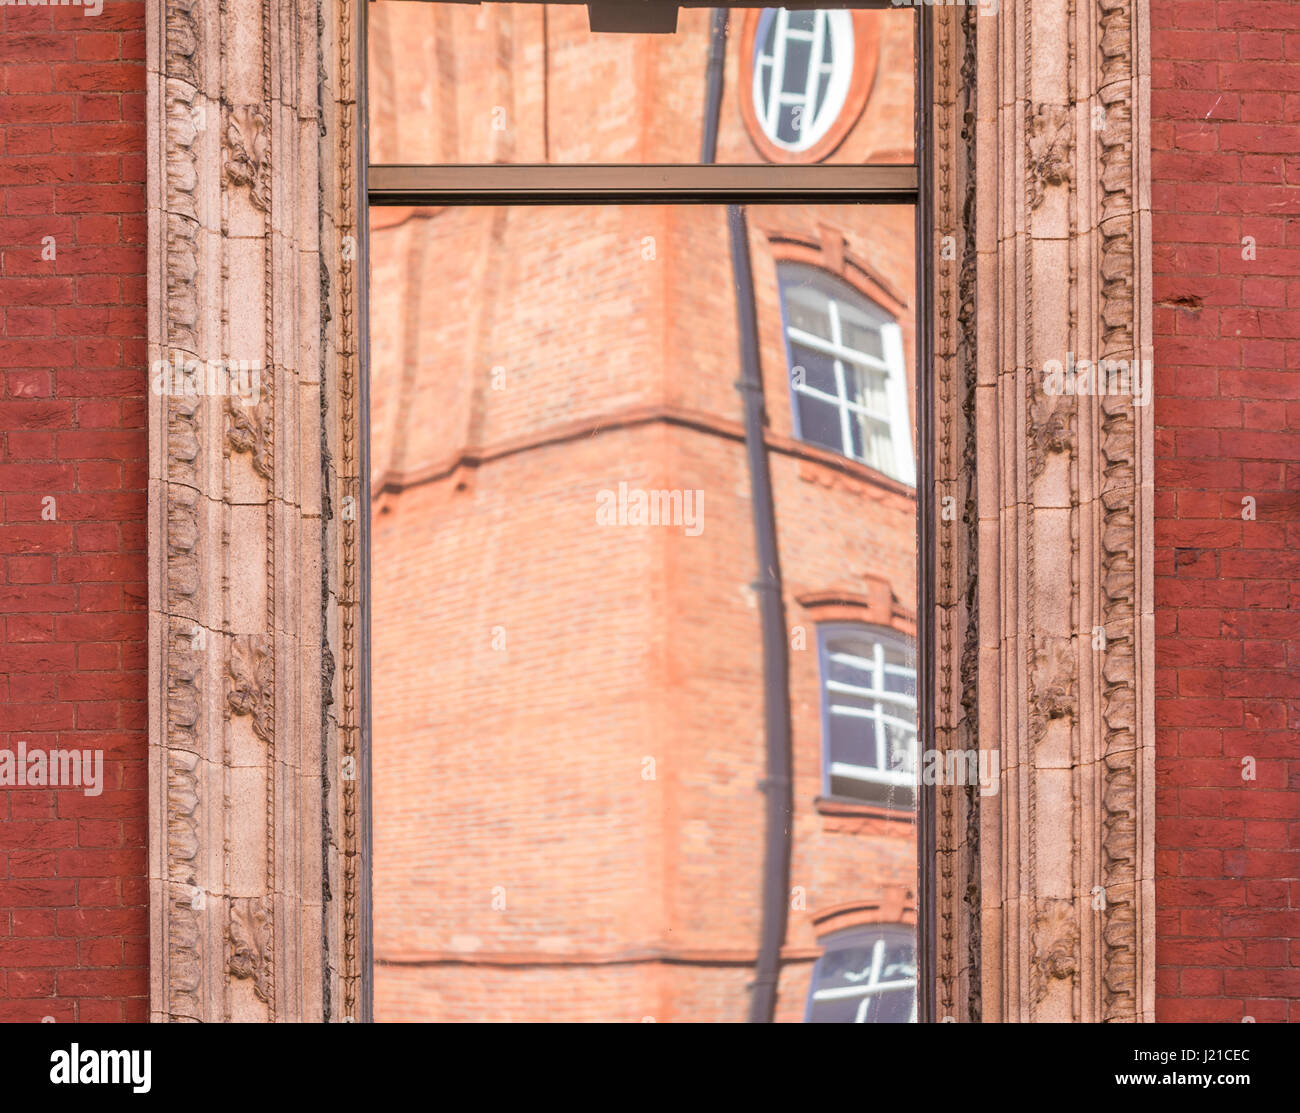 Reflektion von einem alten Backsteingebäude in London in einem Fenster mit kunstvollen Formen, London, England, Grossbritannien Stockfoto